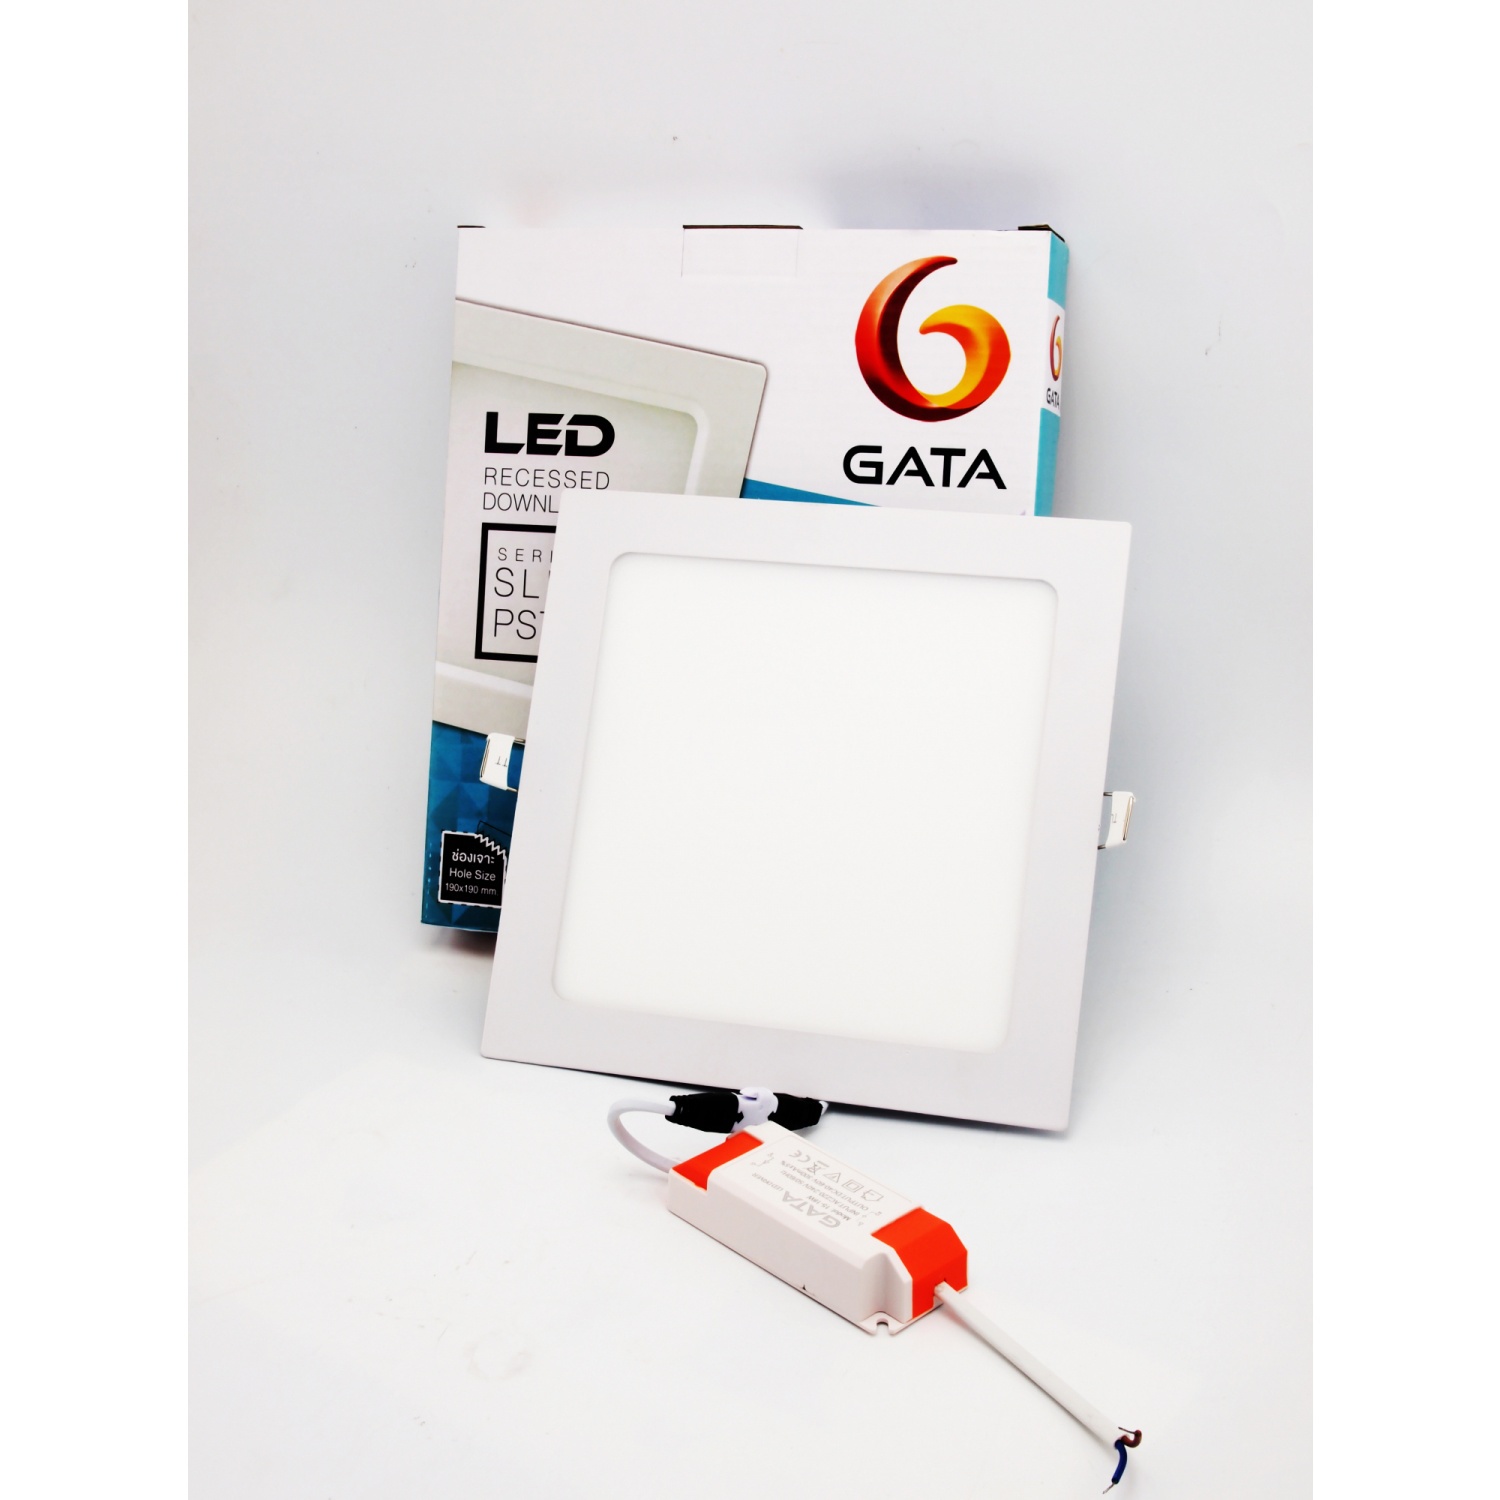 GATA โคมดาวไลท์ LED แบบฝังฝ้าหน้าเหลี่ยม ขอบสีขาว 6นิ้ว 15W รุ่น Slim1 แสงเดย์ไลท์